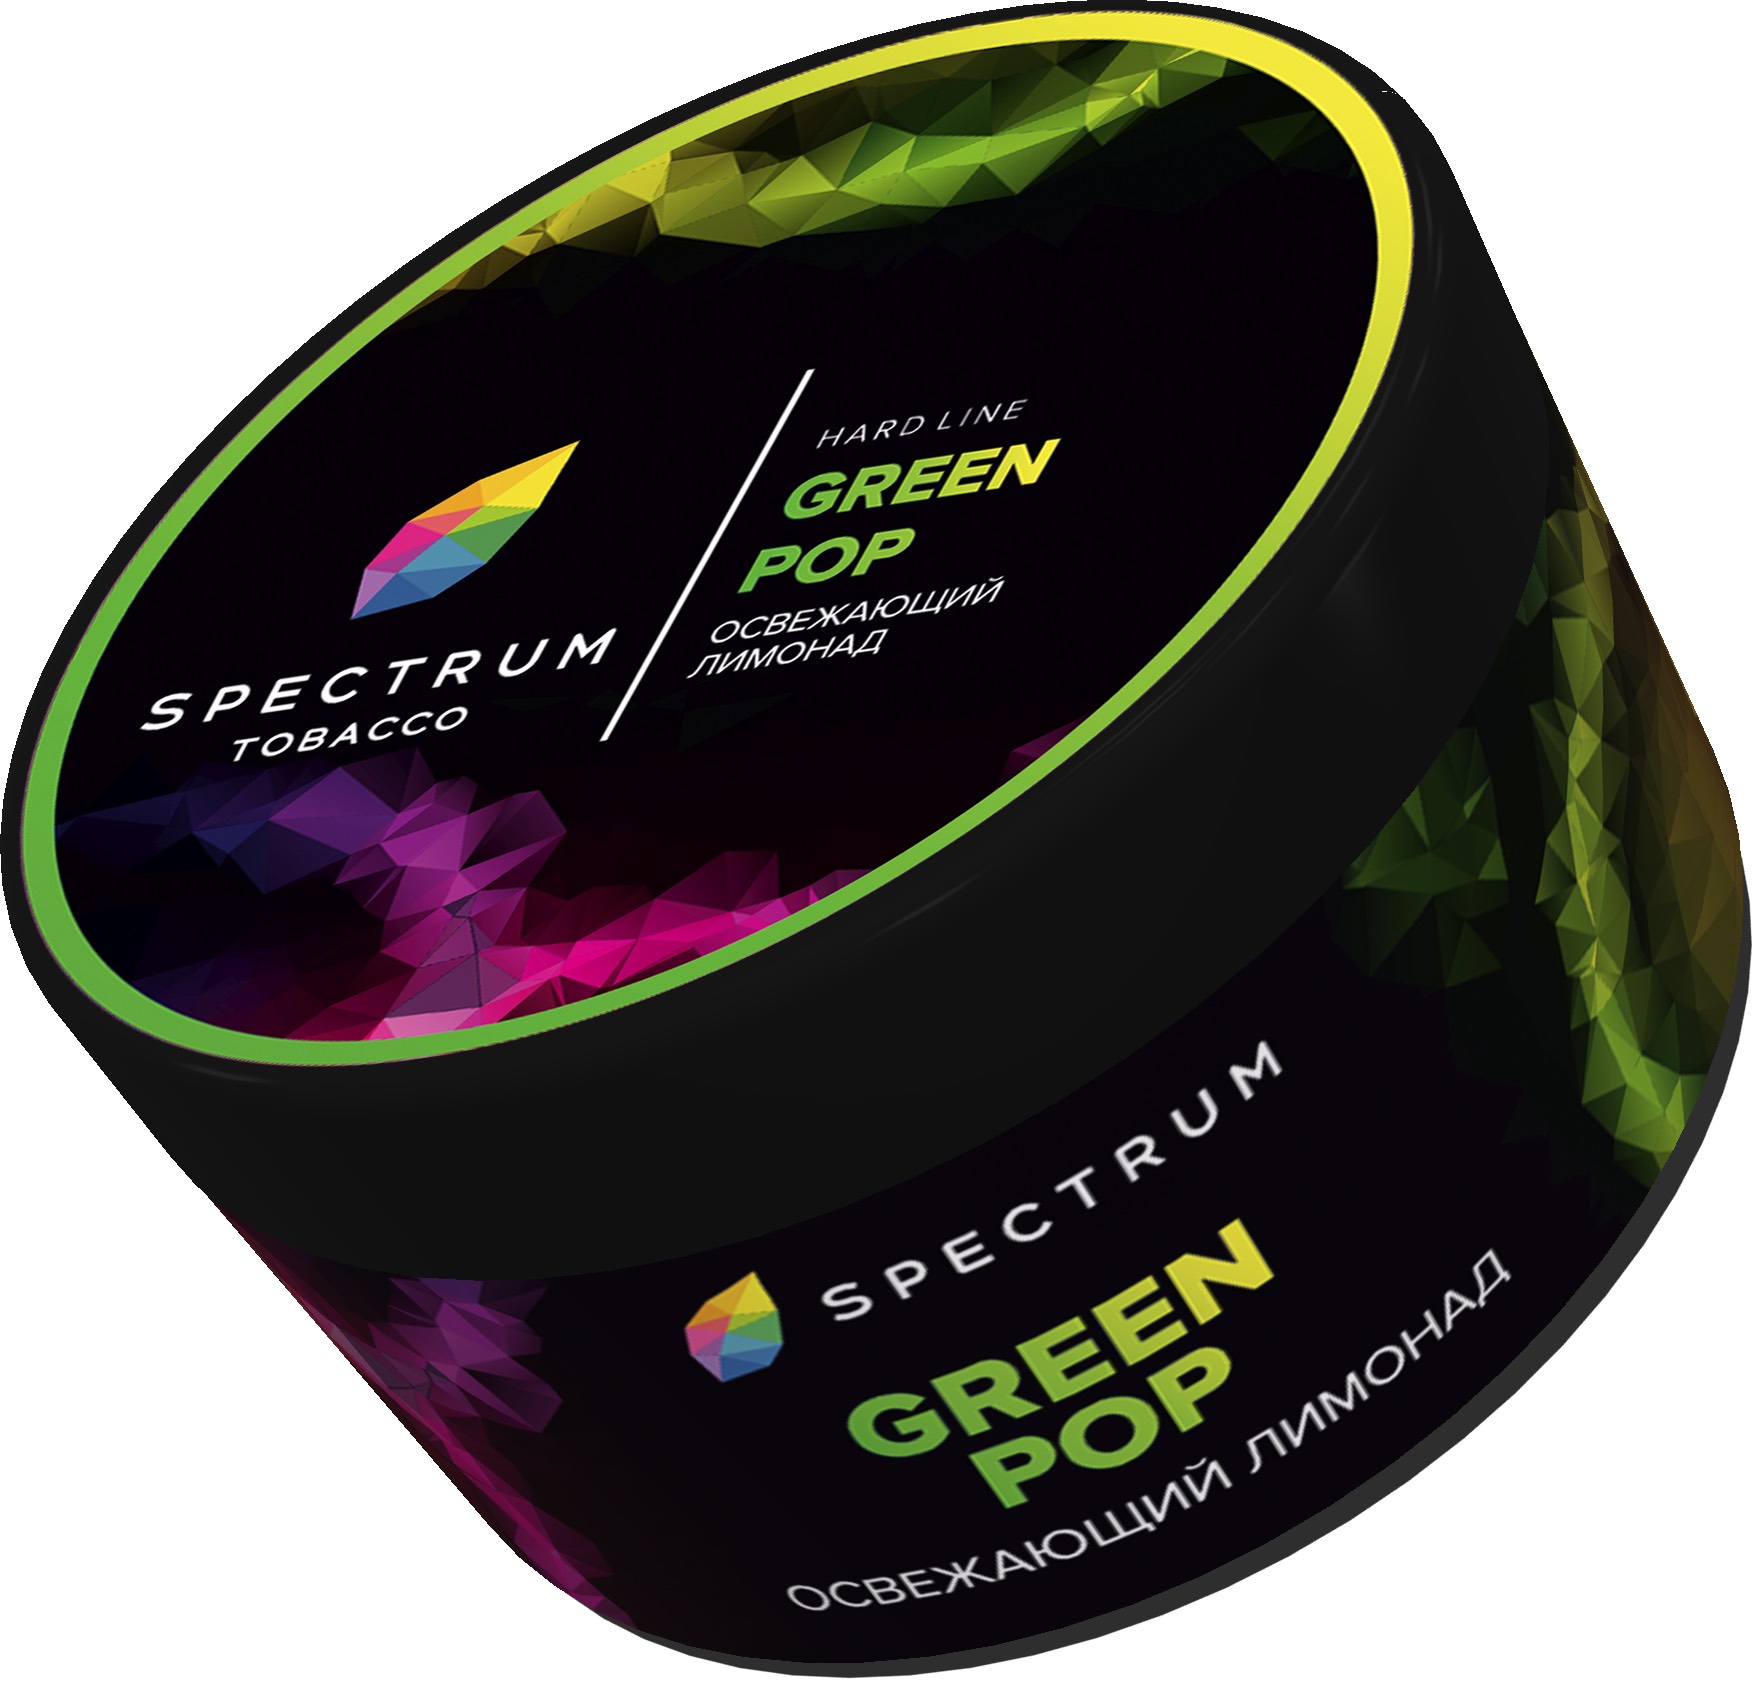 Табак - SPECTRUM - GREEN POP - 200 g - HARD LINE